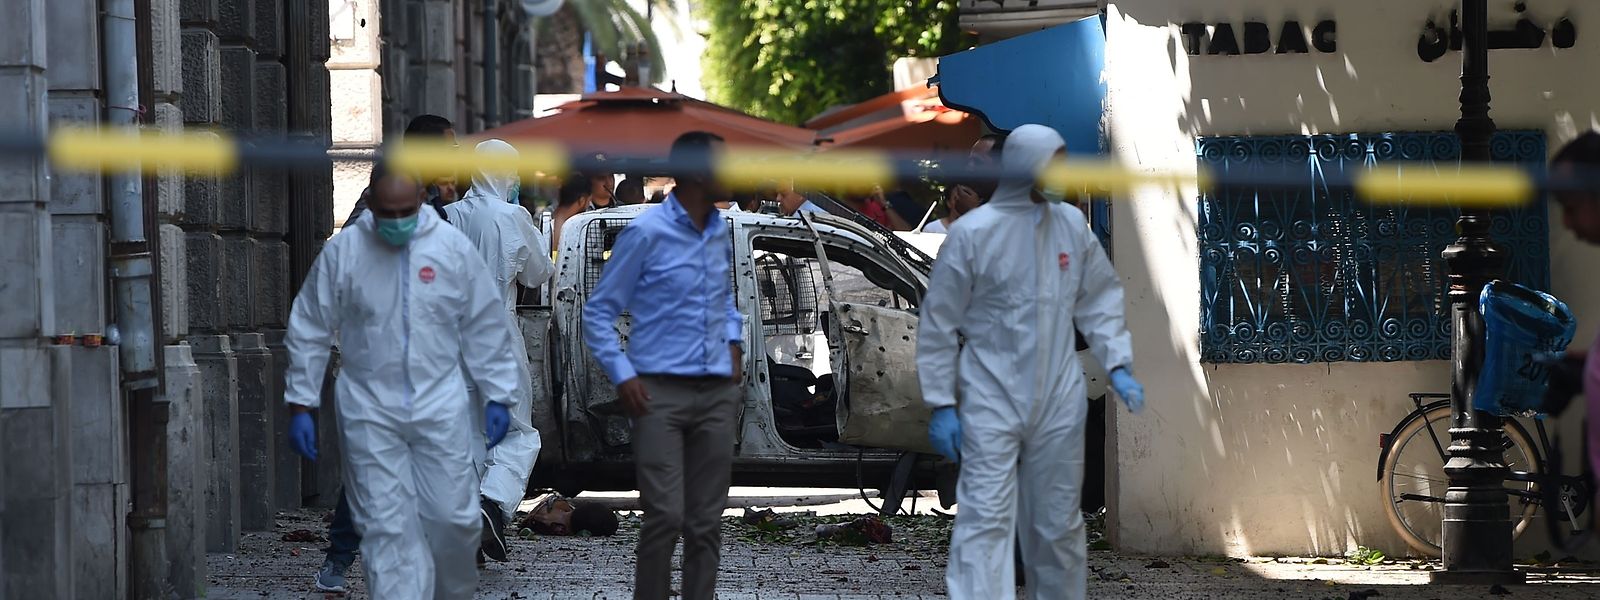 Wie das tunesische Innenministerium am Donnerstag mitteilte sprengte sich ein erster Attentäter im Stadtzentrum nahe der französischen Botschaft und der historischen Altstadt in die Luft, ein zweiter Attentäter nahe einer Polizeistation im Stadtteil Al-Gorjani.